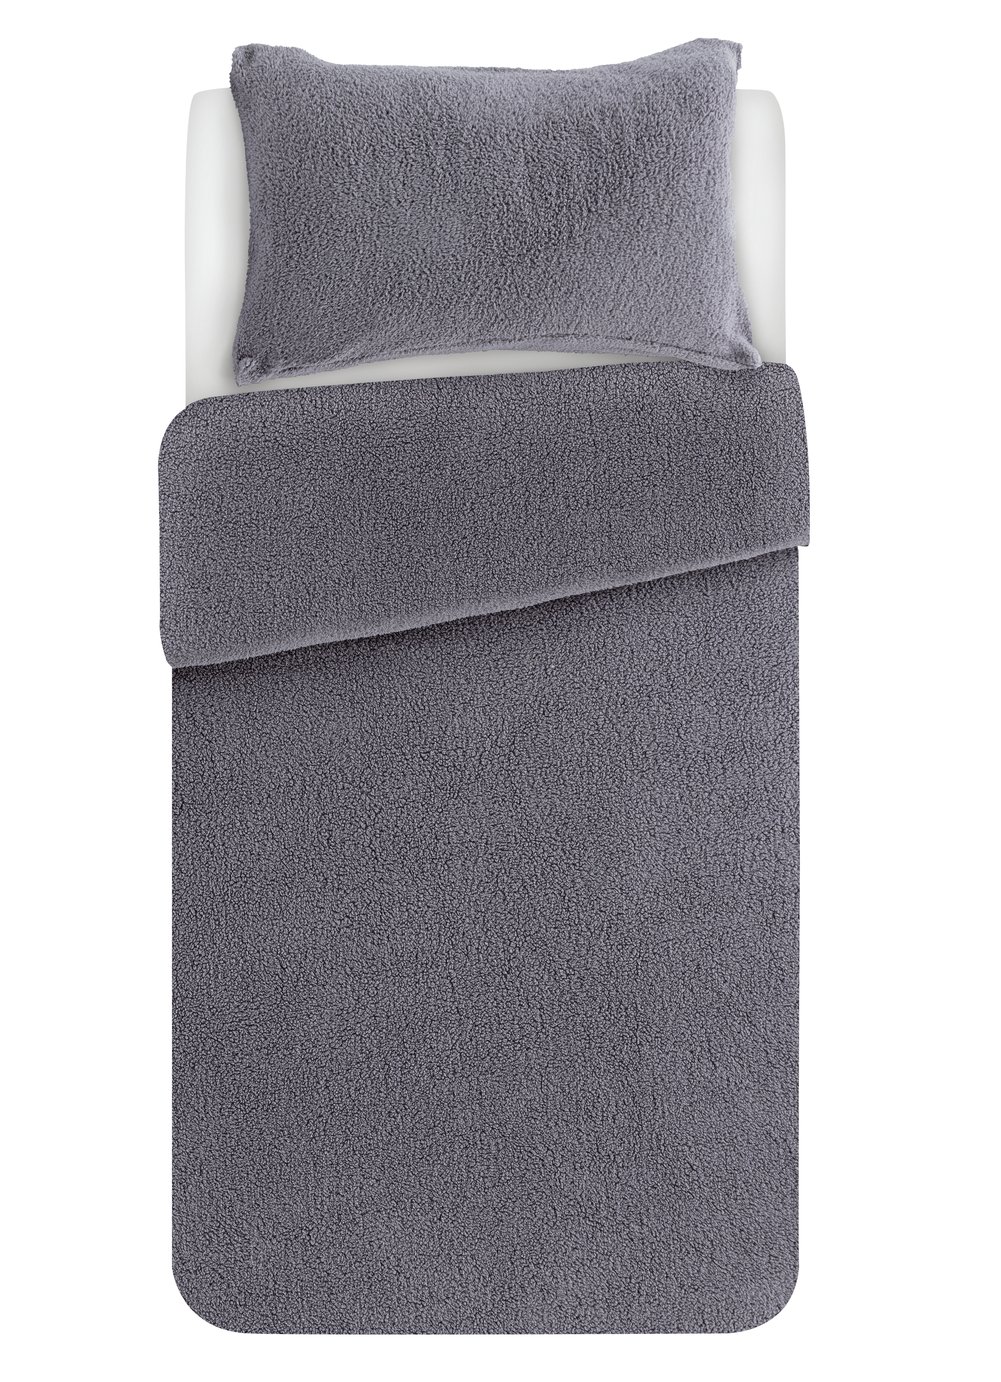 Argos Home Grey Fleece Bedding Set - Single